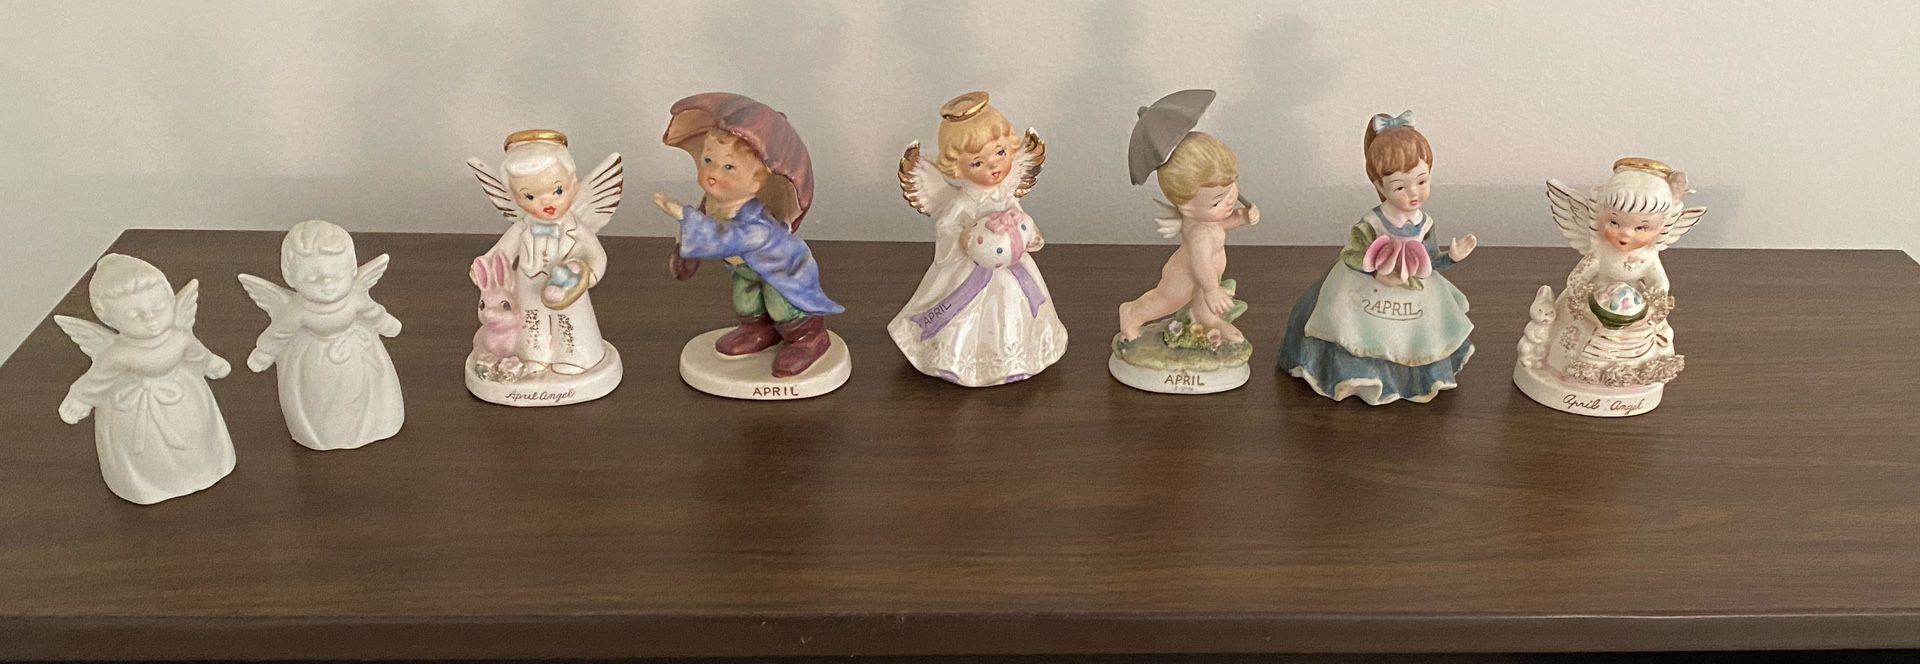 April Figurines